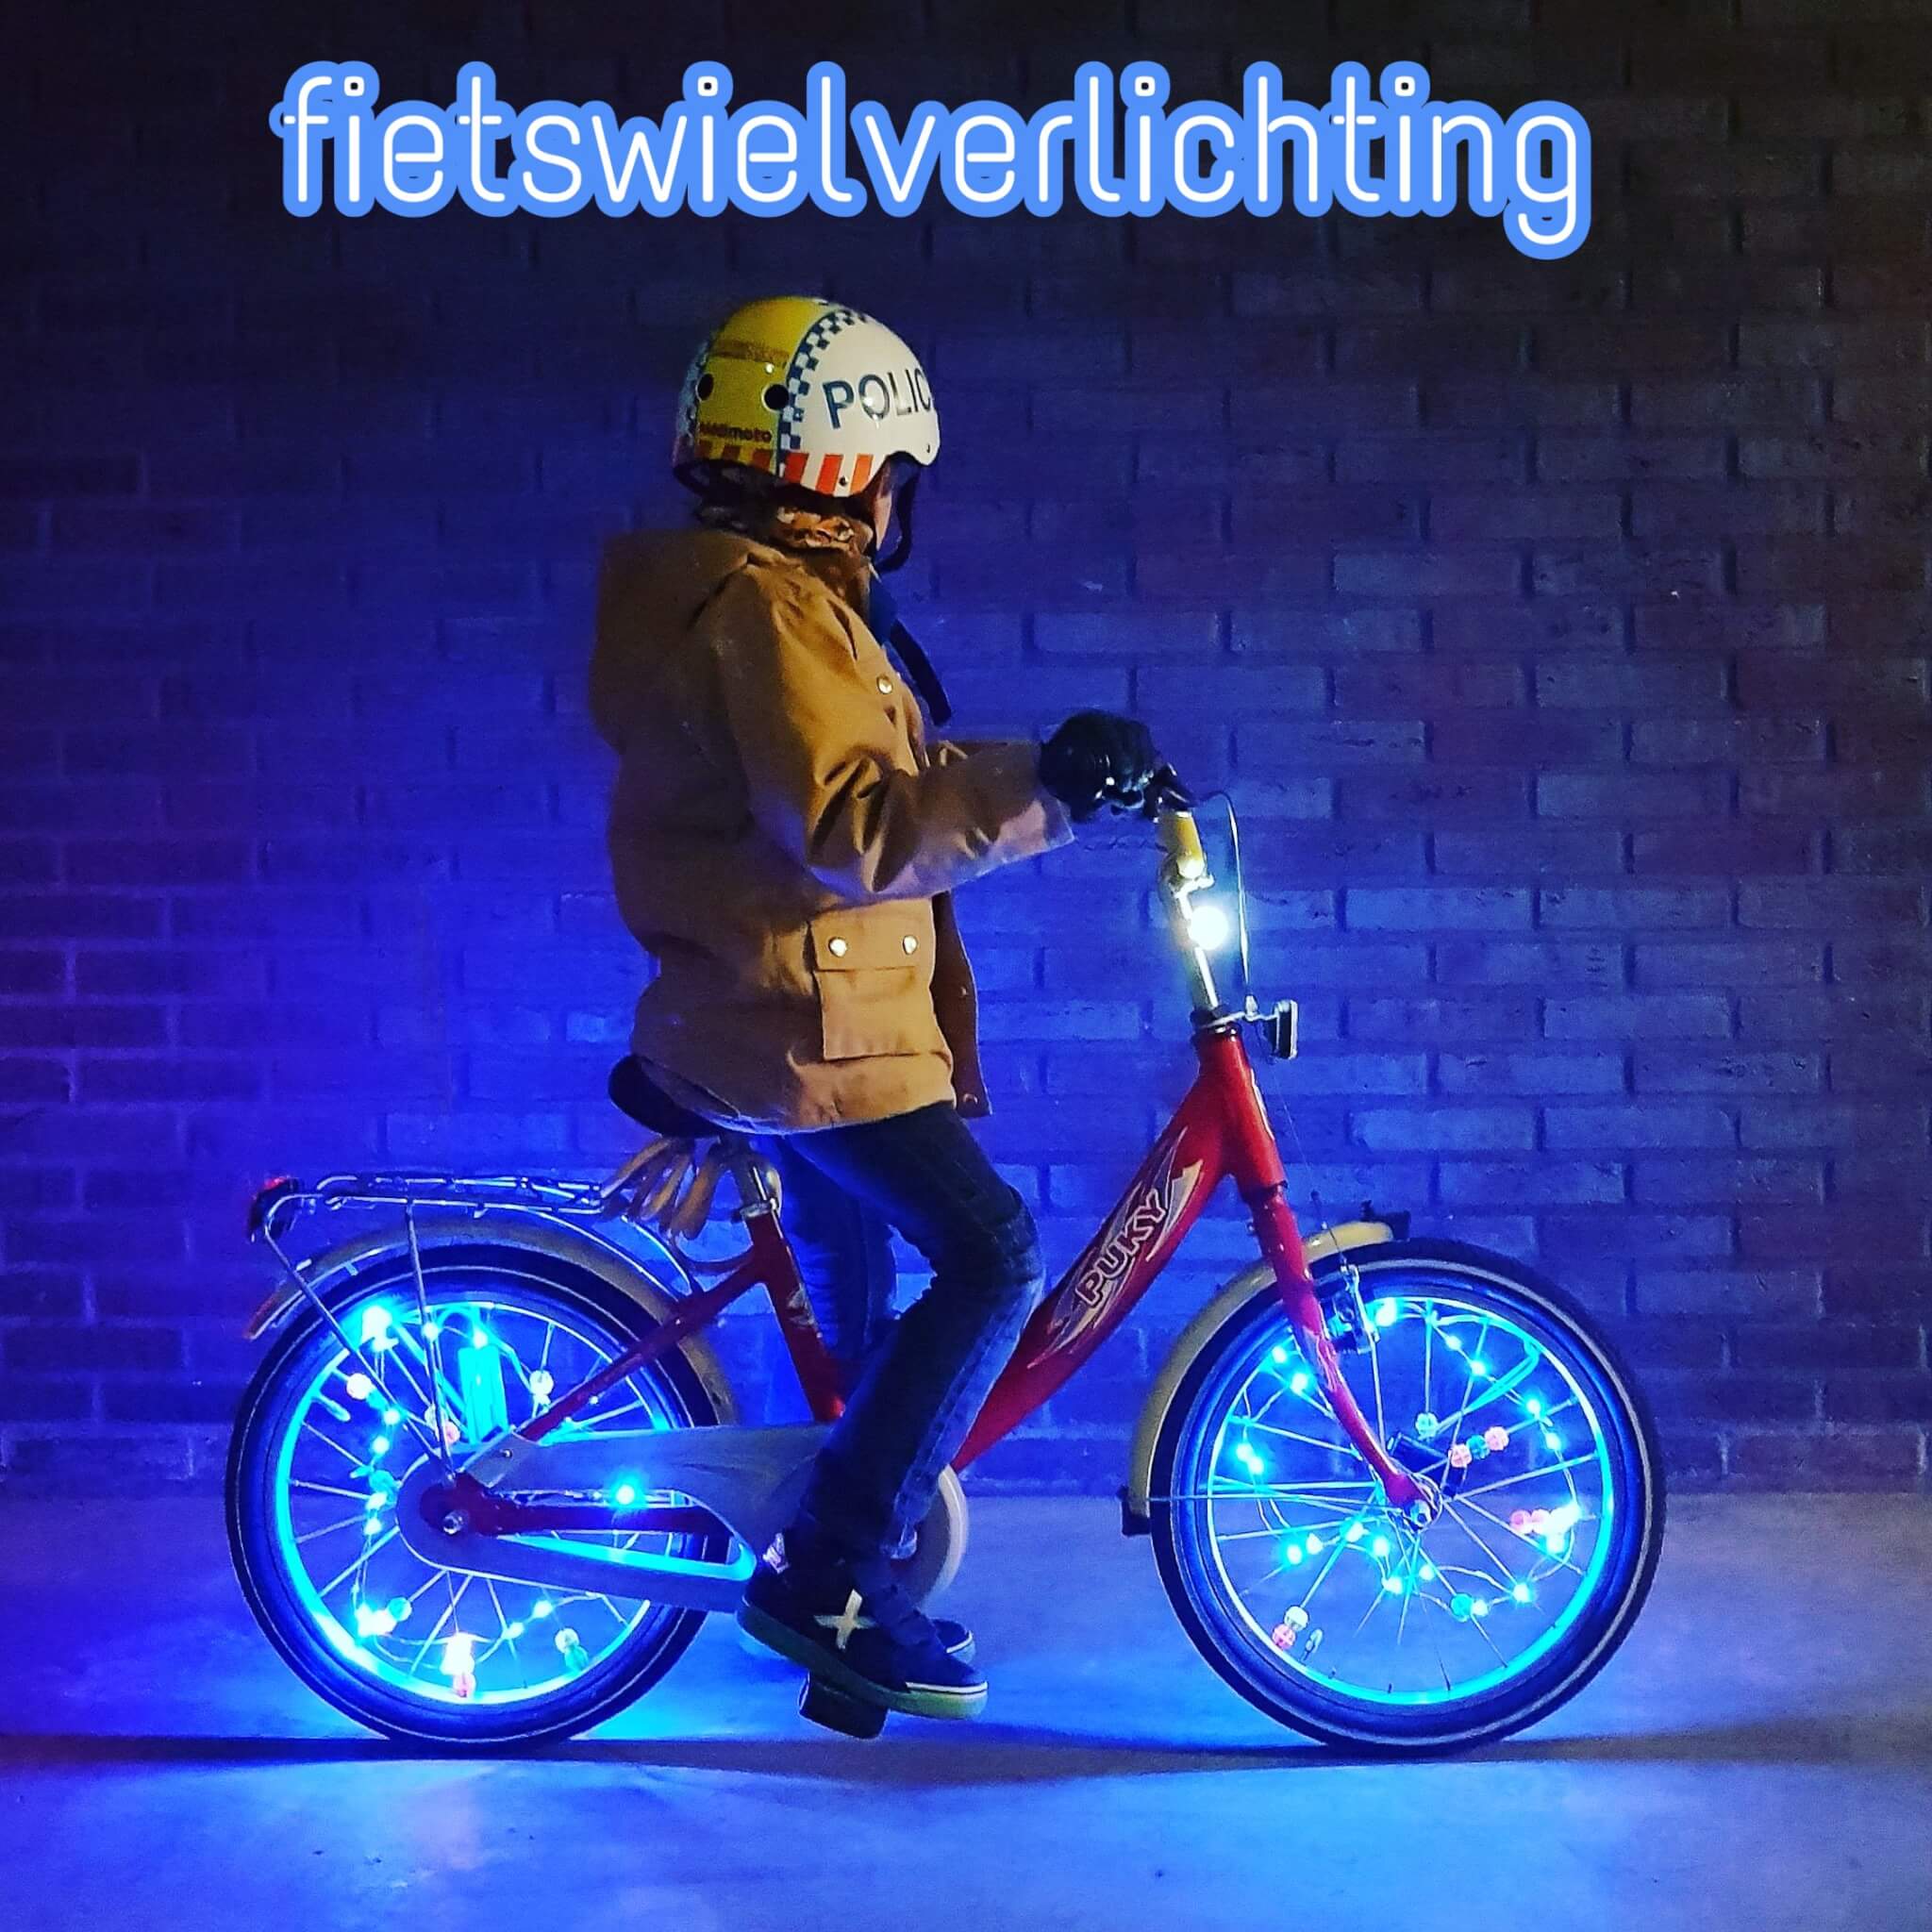 Verleiding Deter stropdas Fietswielverlichting voor kinderfietsen: Bike light - Leuk met kids Leuk  met kids